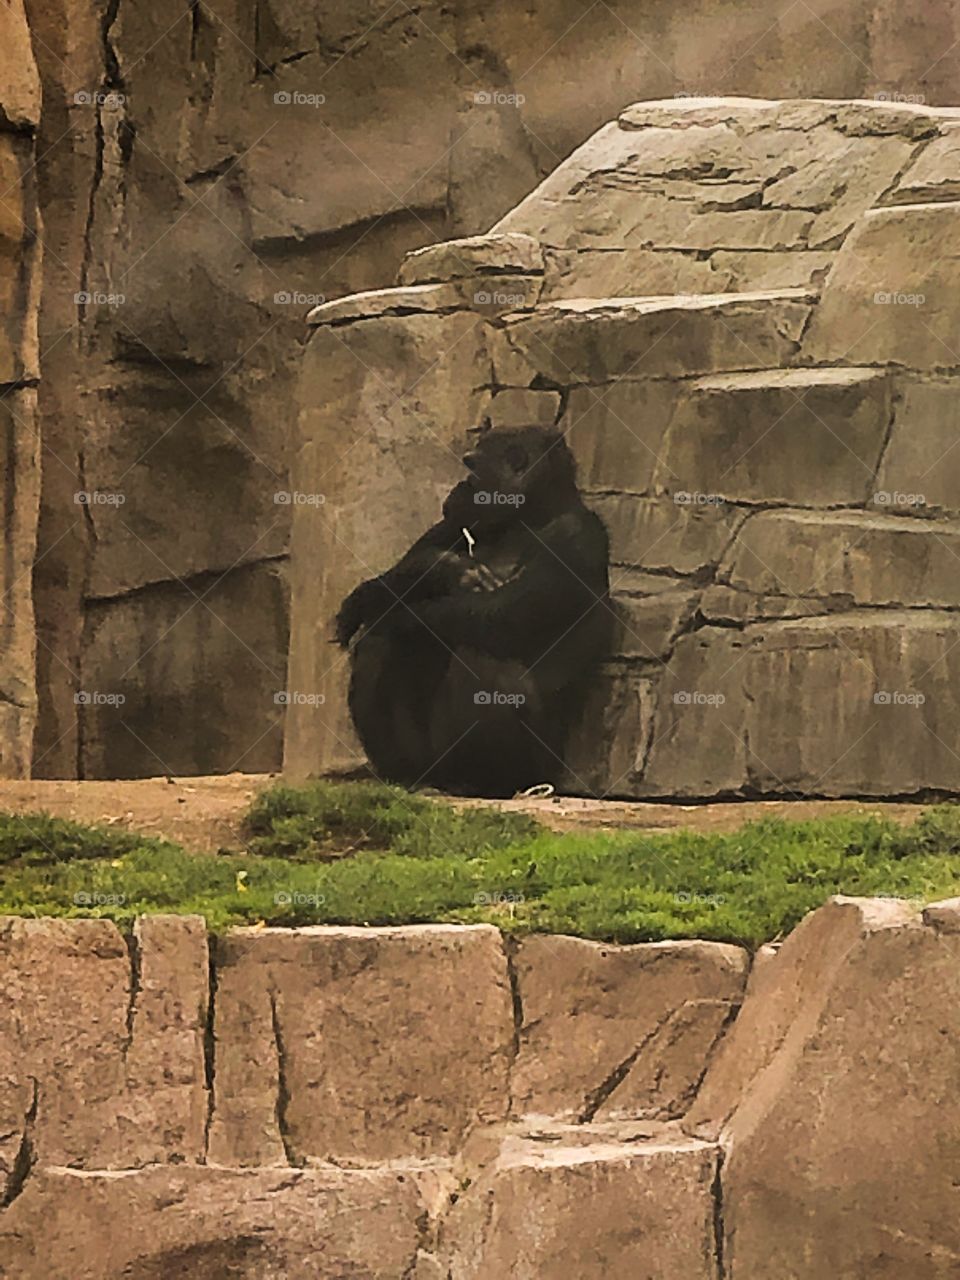 San Diego zoo Gorilla